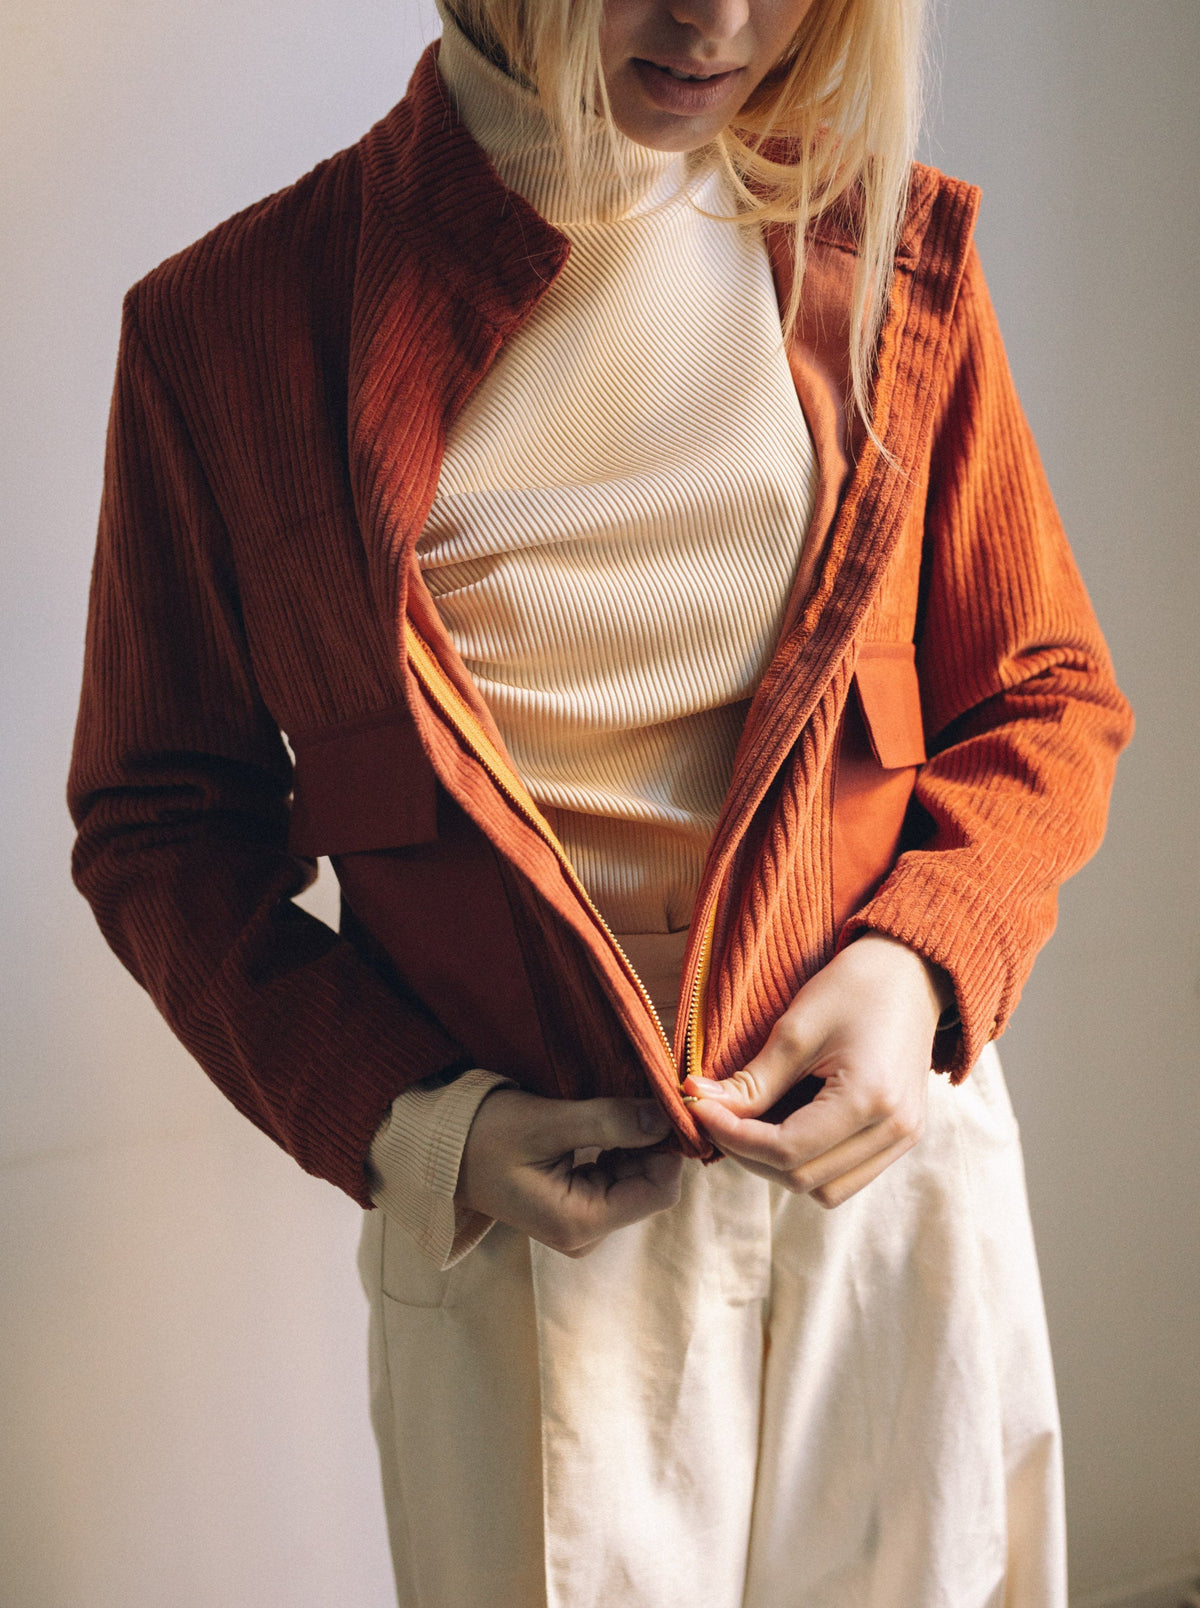 Terracotta rövid női kabát